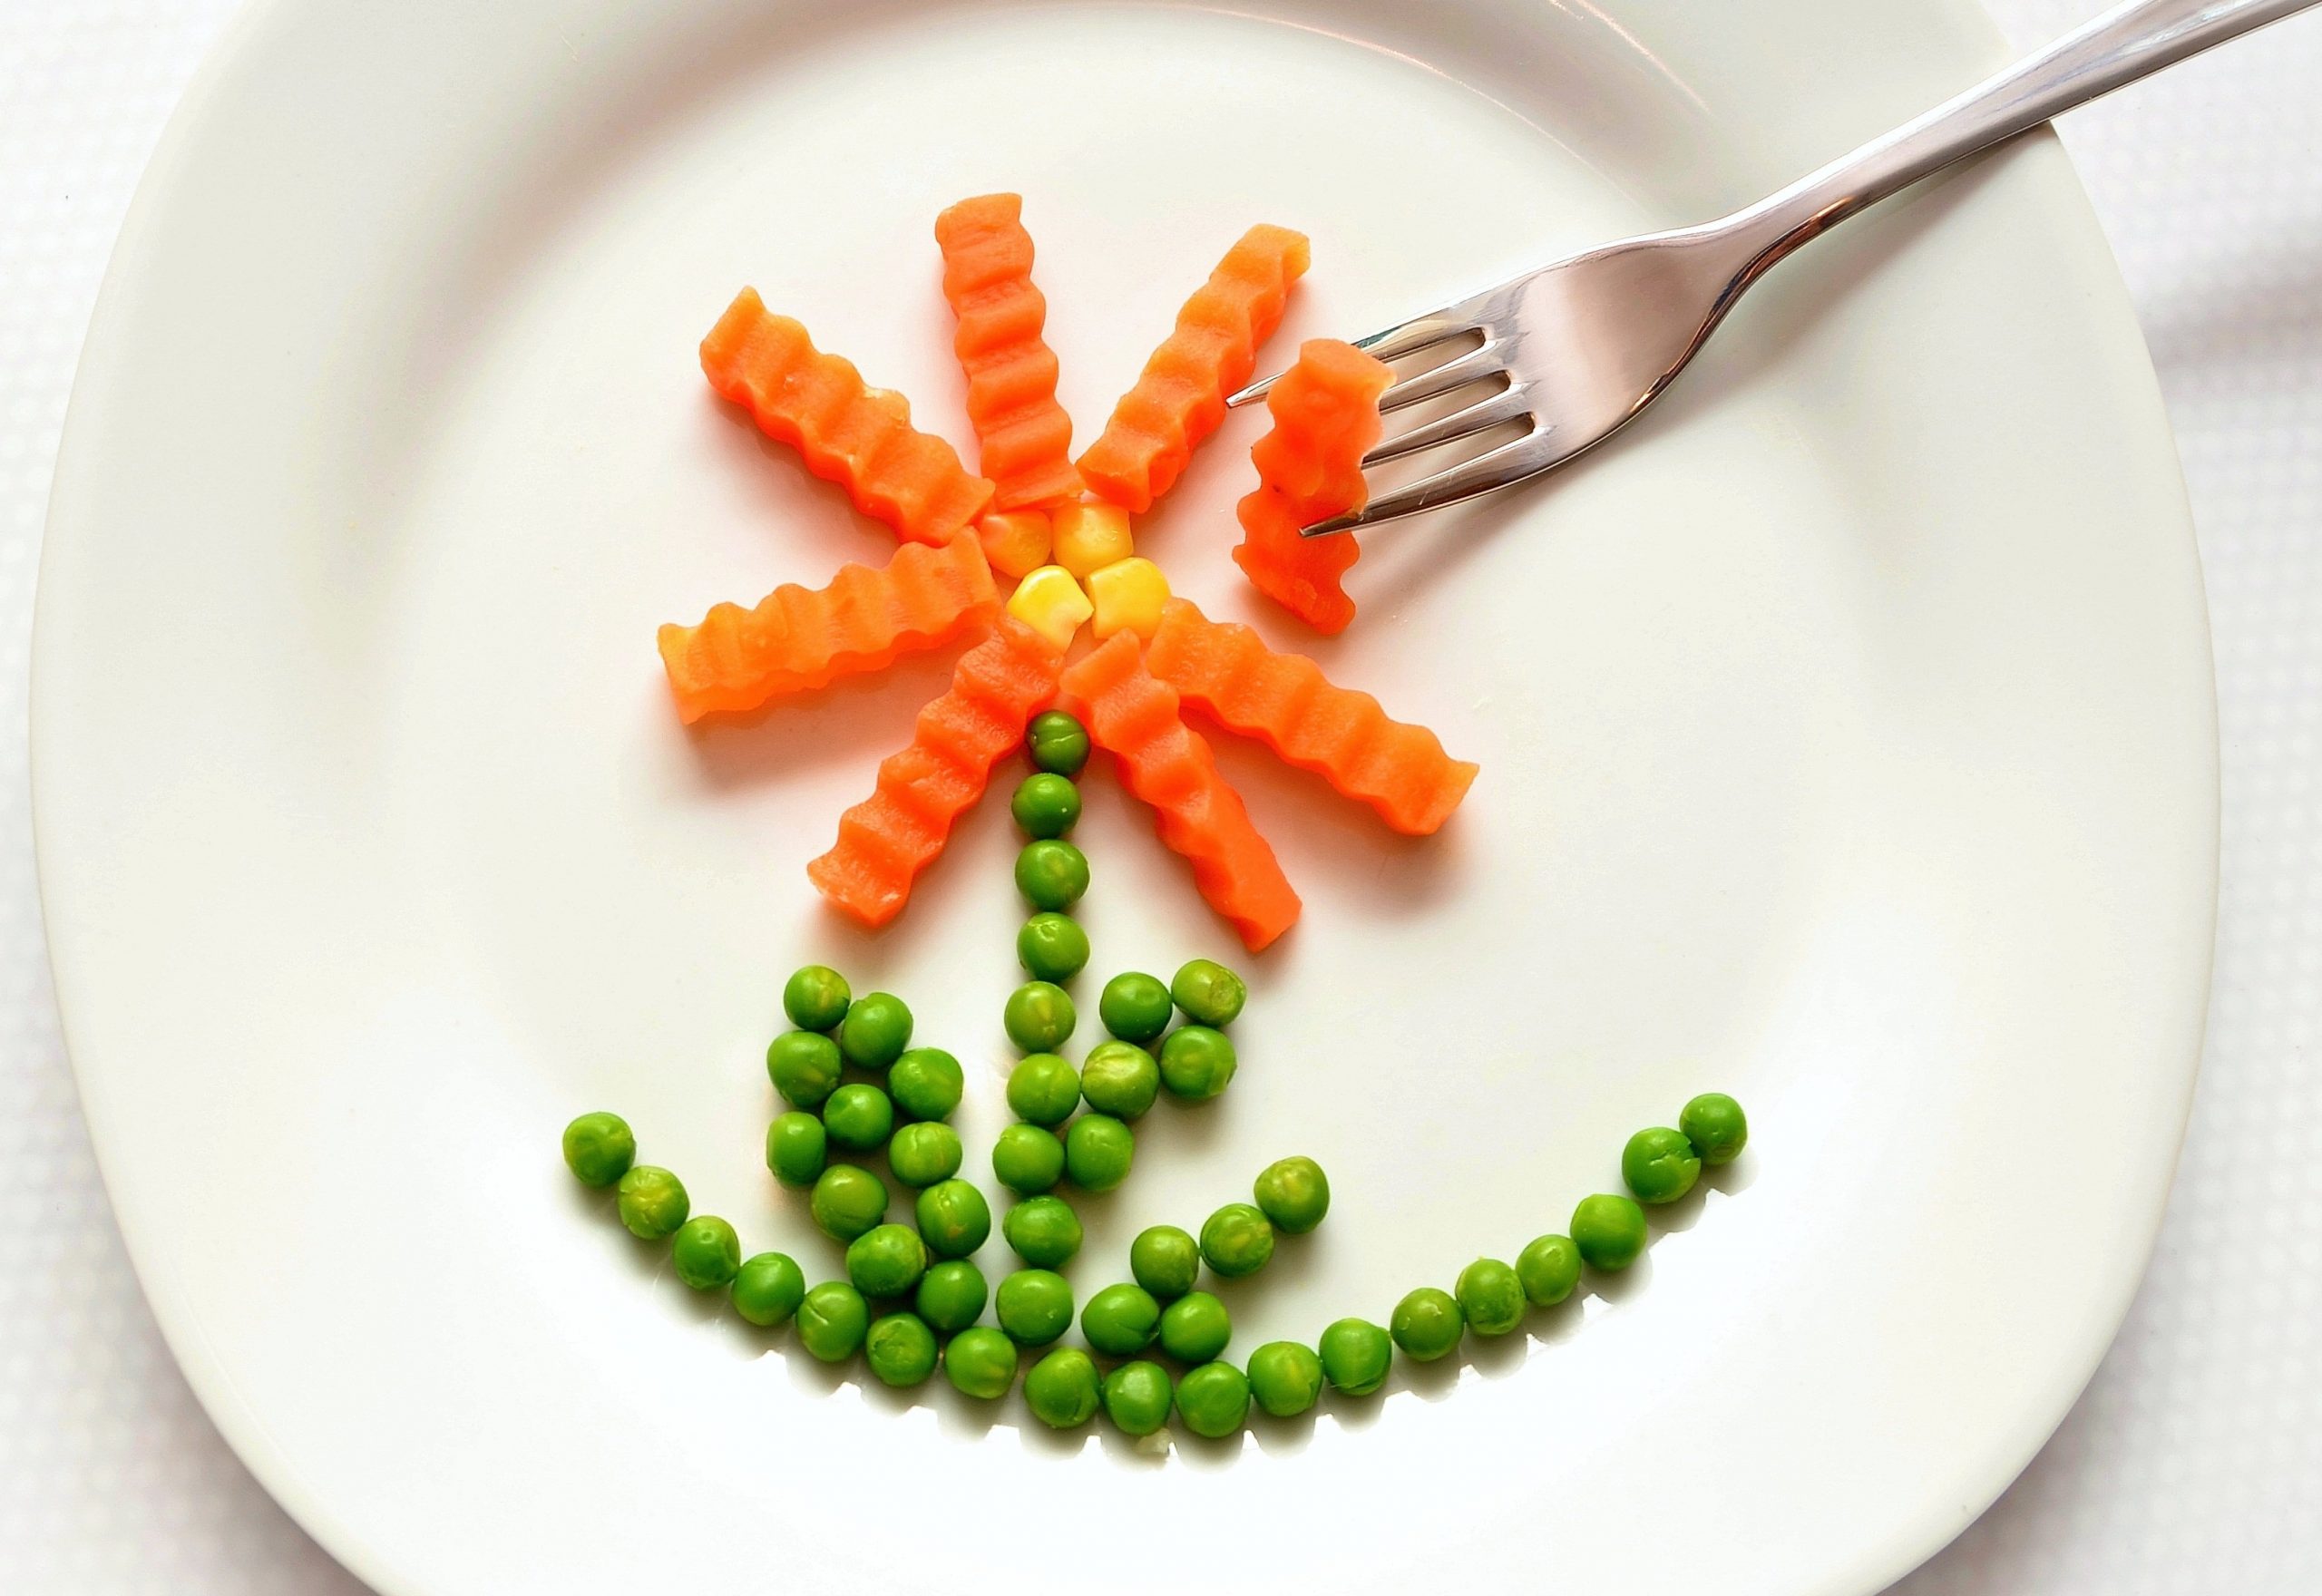 eat-carrots-peas-healthy-45218